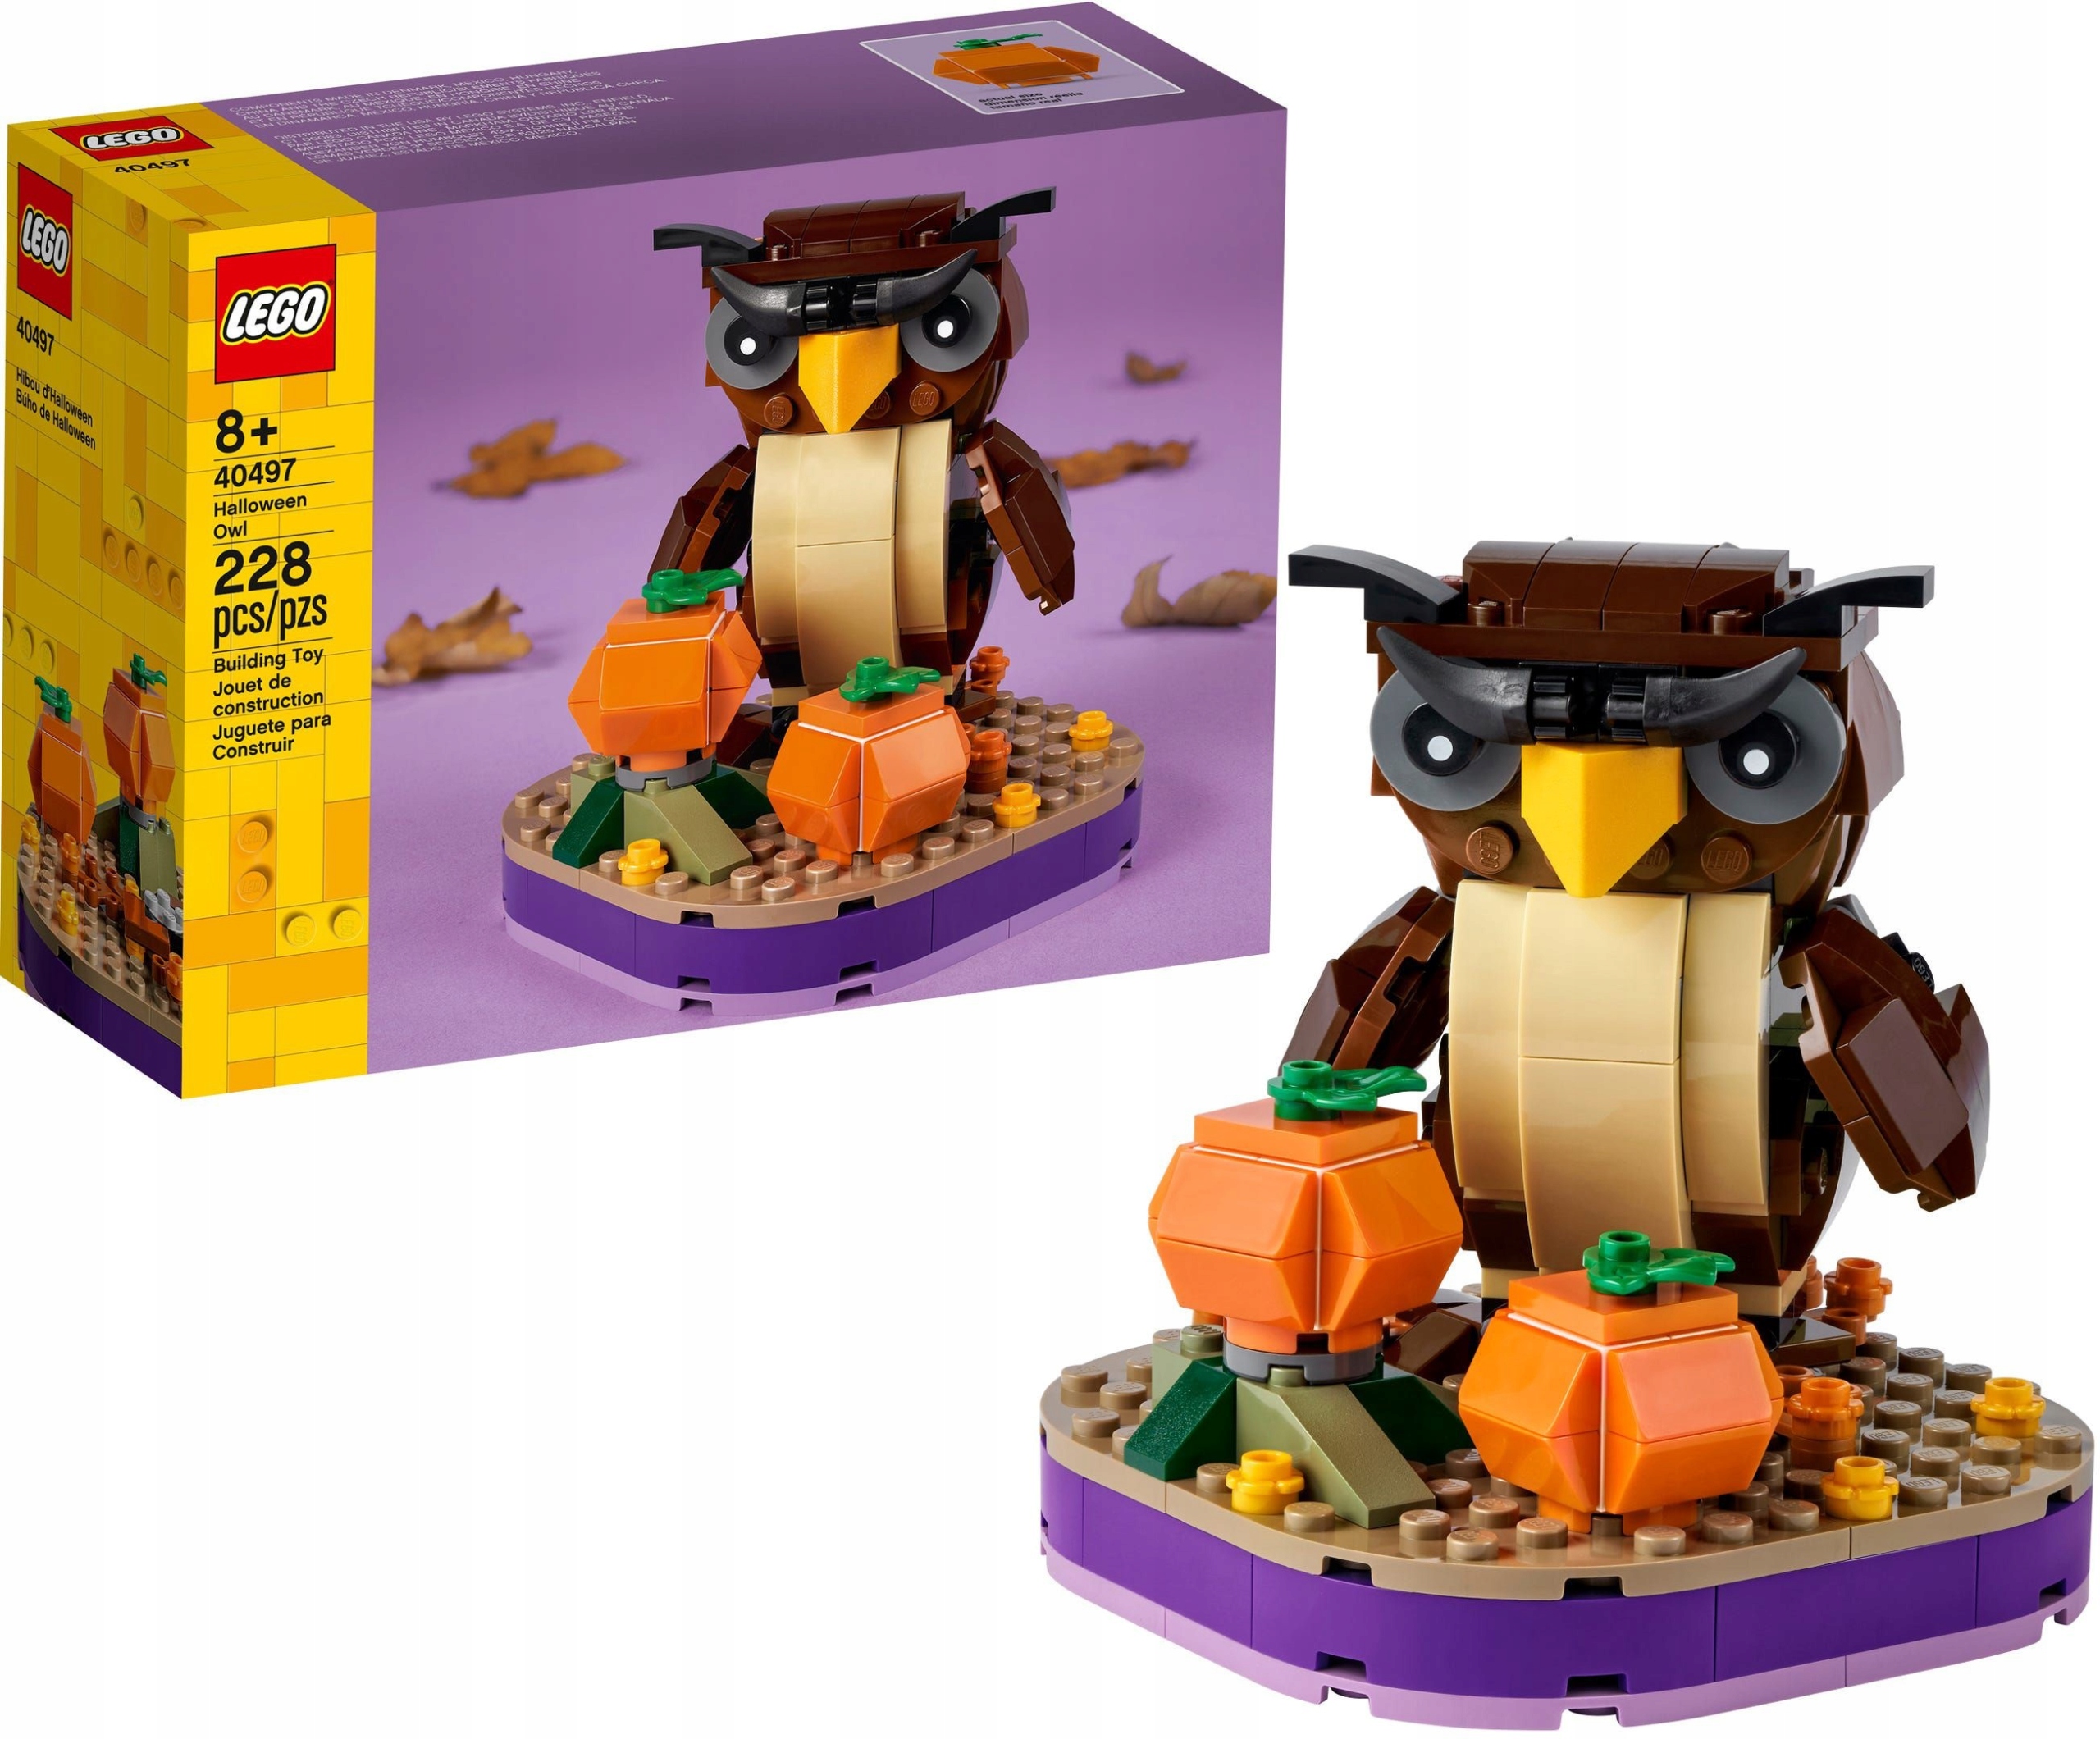 LEGO Classic 40497 Halloweenowa sowa - ceny - Allegro.pl